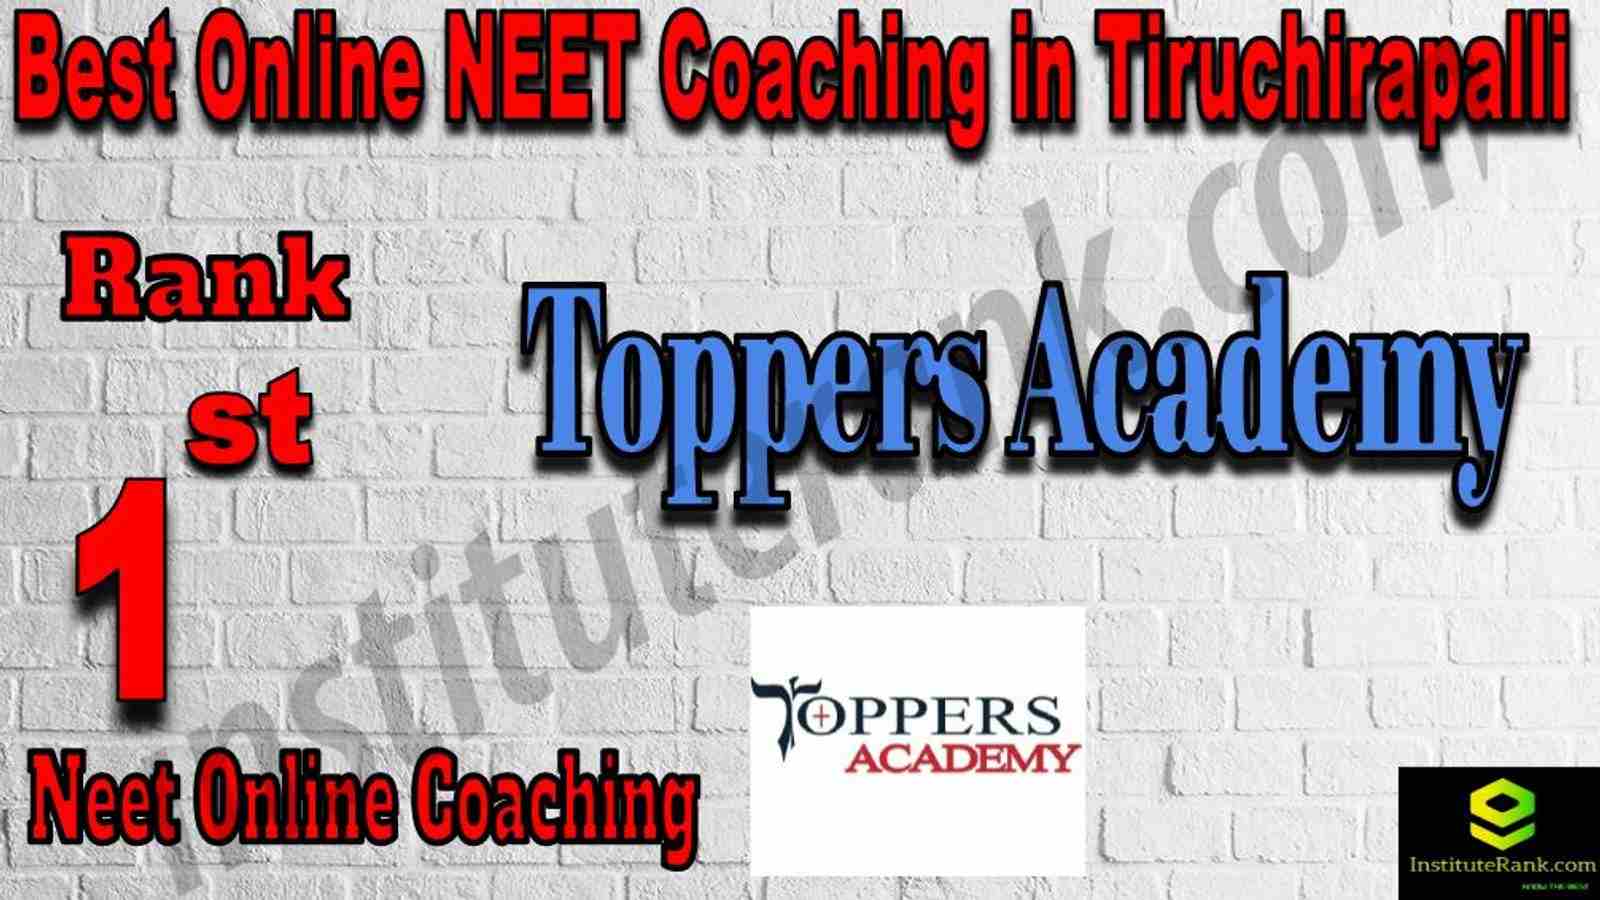 1st Best Online Neet Coaching in Tiruchirapalli